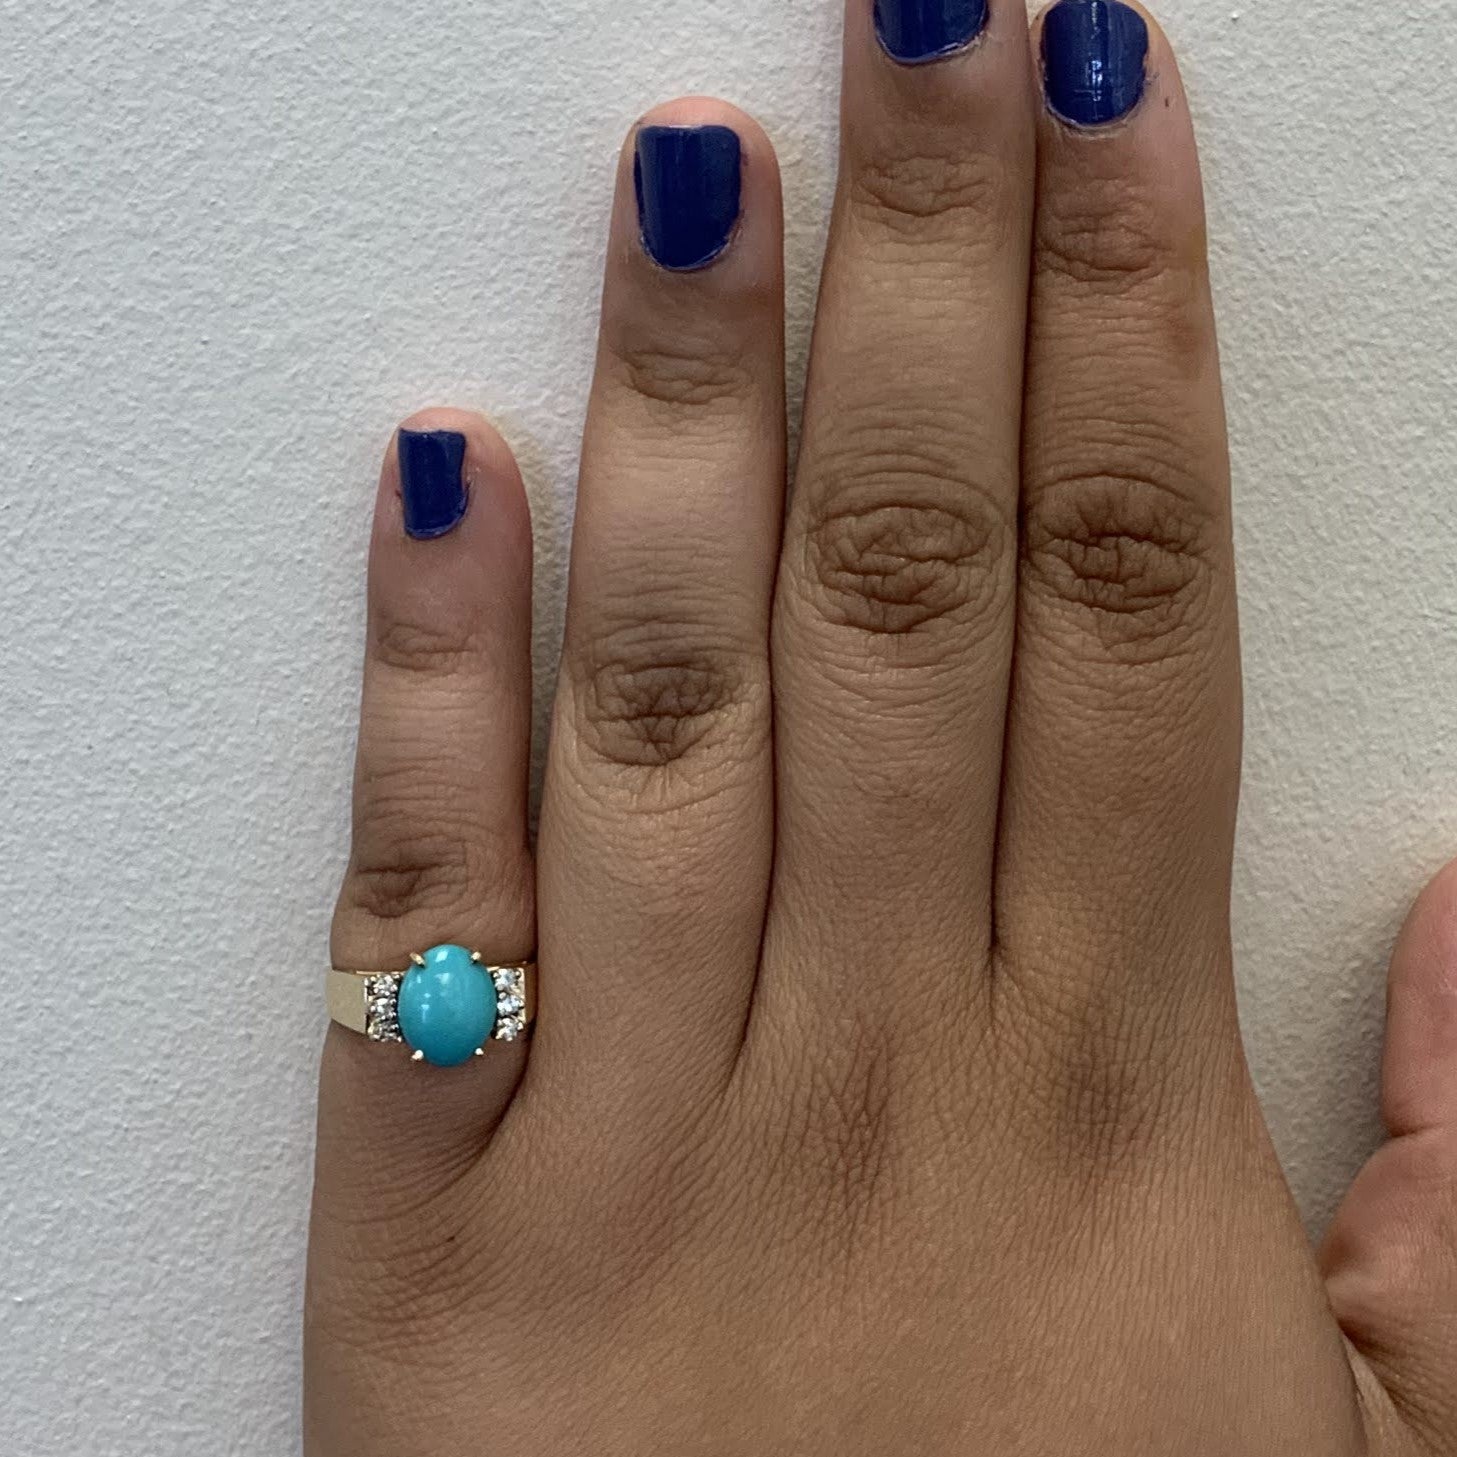 Turquoise & Diamond Ring | 1.26ct, 0.08ctw | SZ 5.75 |